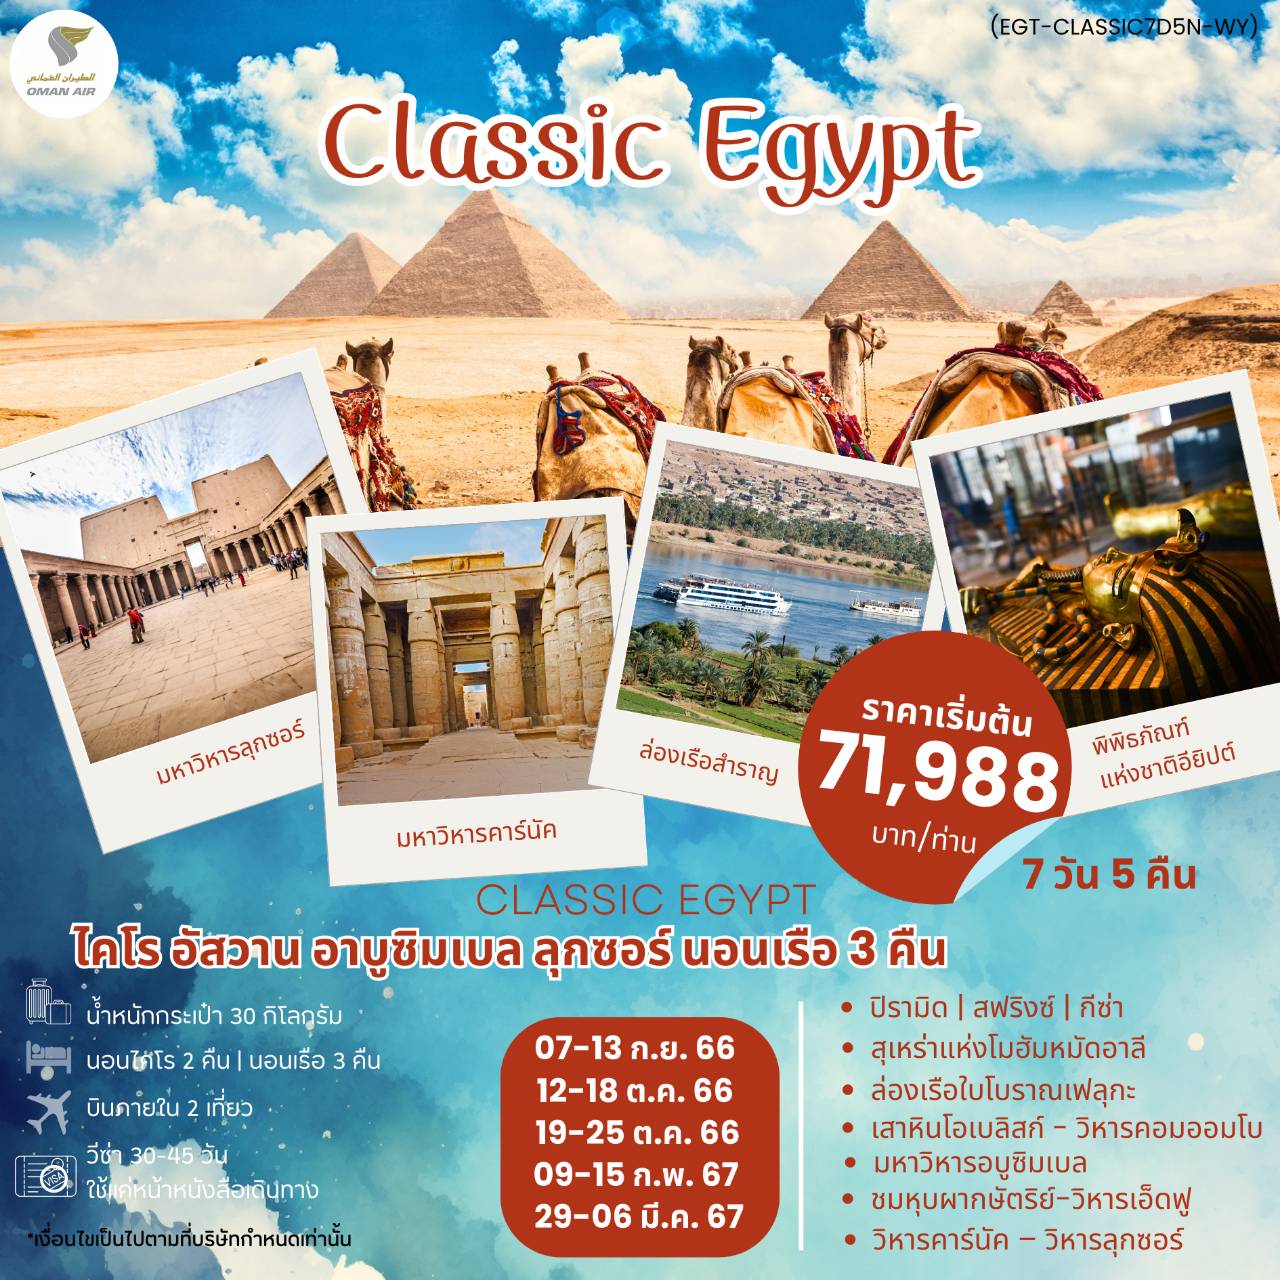 ทัวร์อียิปต์ CLASSIC EGYPT 7วัน 5คืน